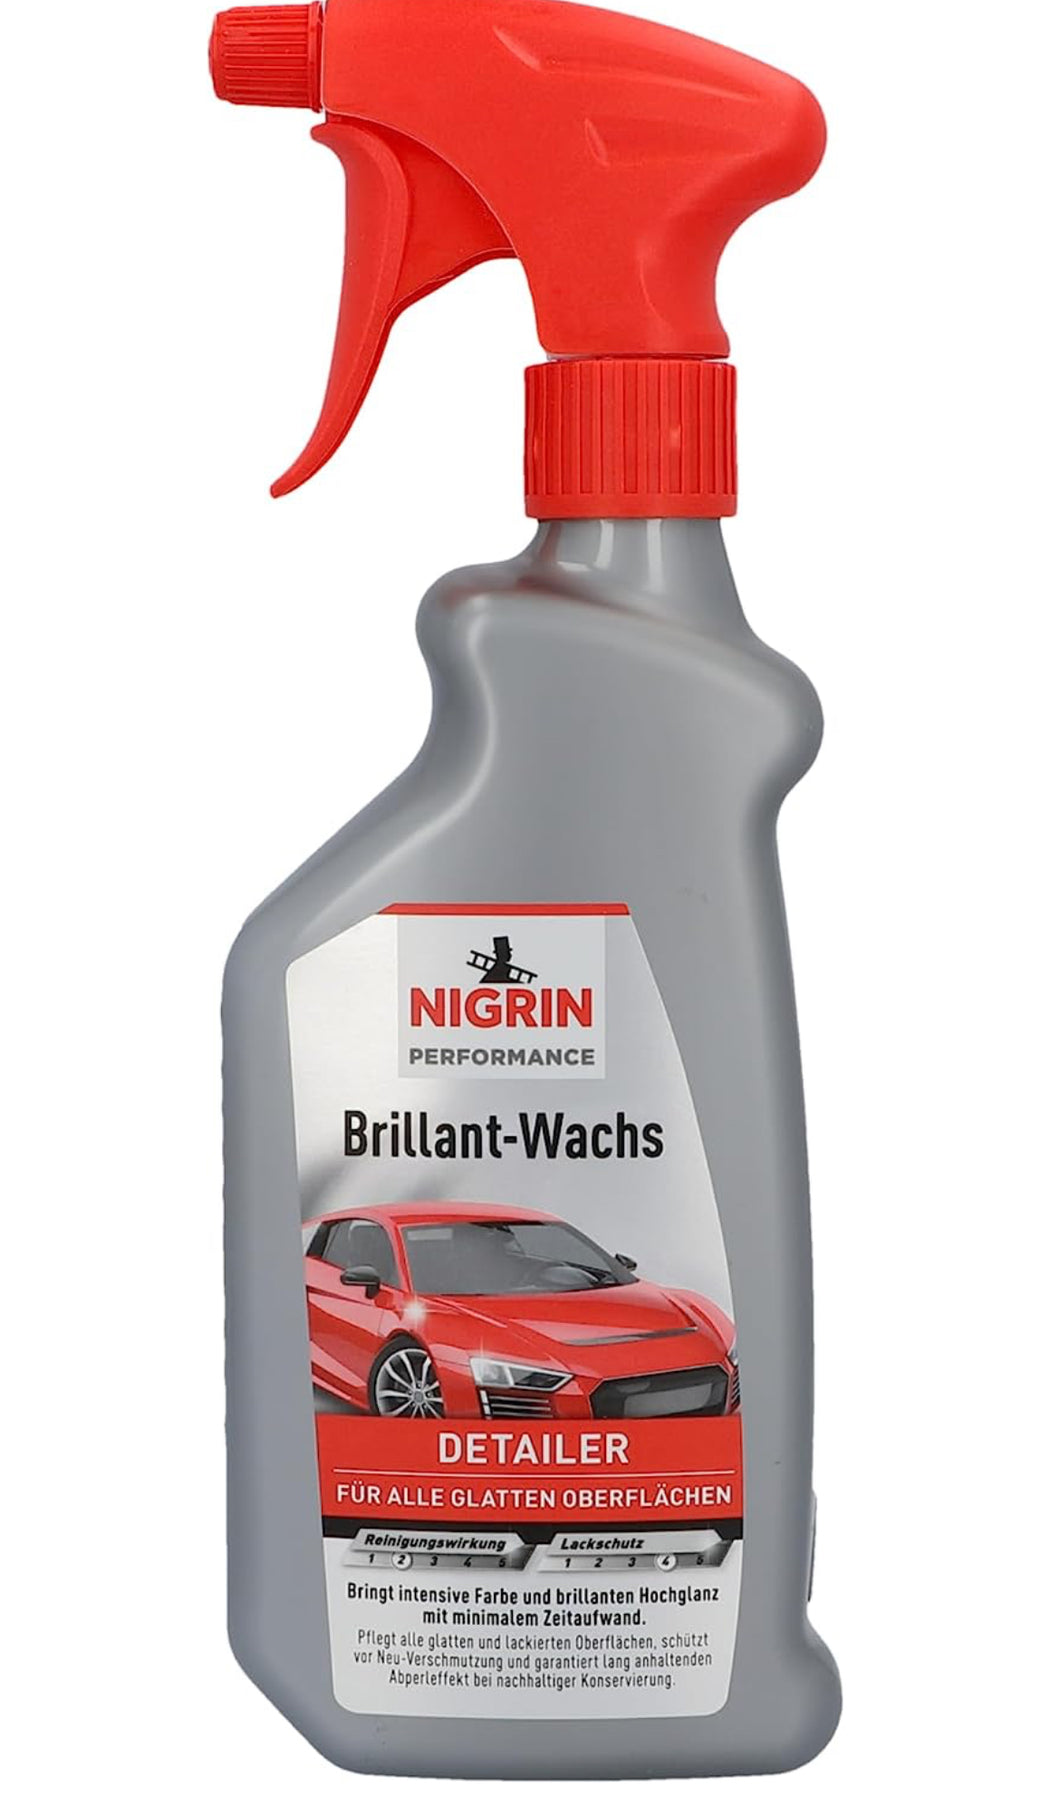 NIGRIN Performance Brillant-Wachs TURBO Auto Wachs, 500 ml Sprüh-Flasche, intensiviert Farben, bringt brillanten Hochglanz